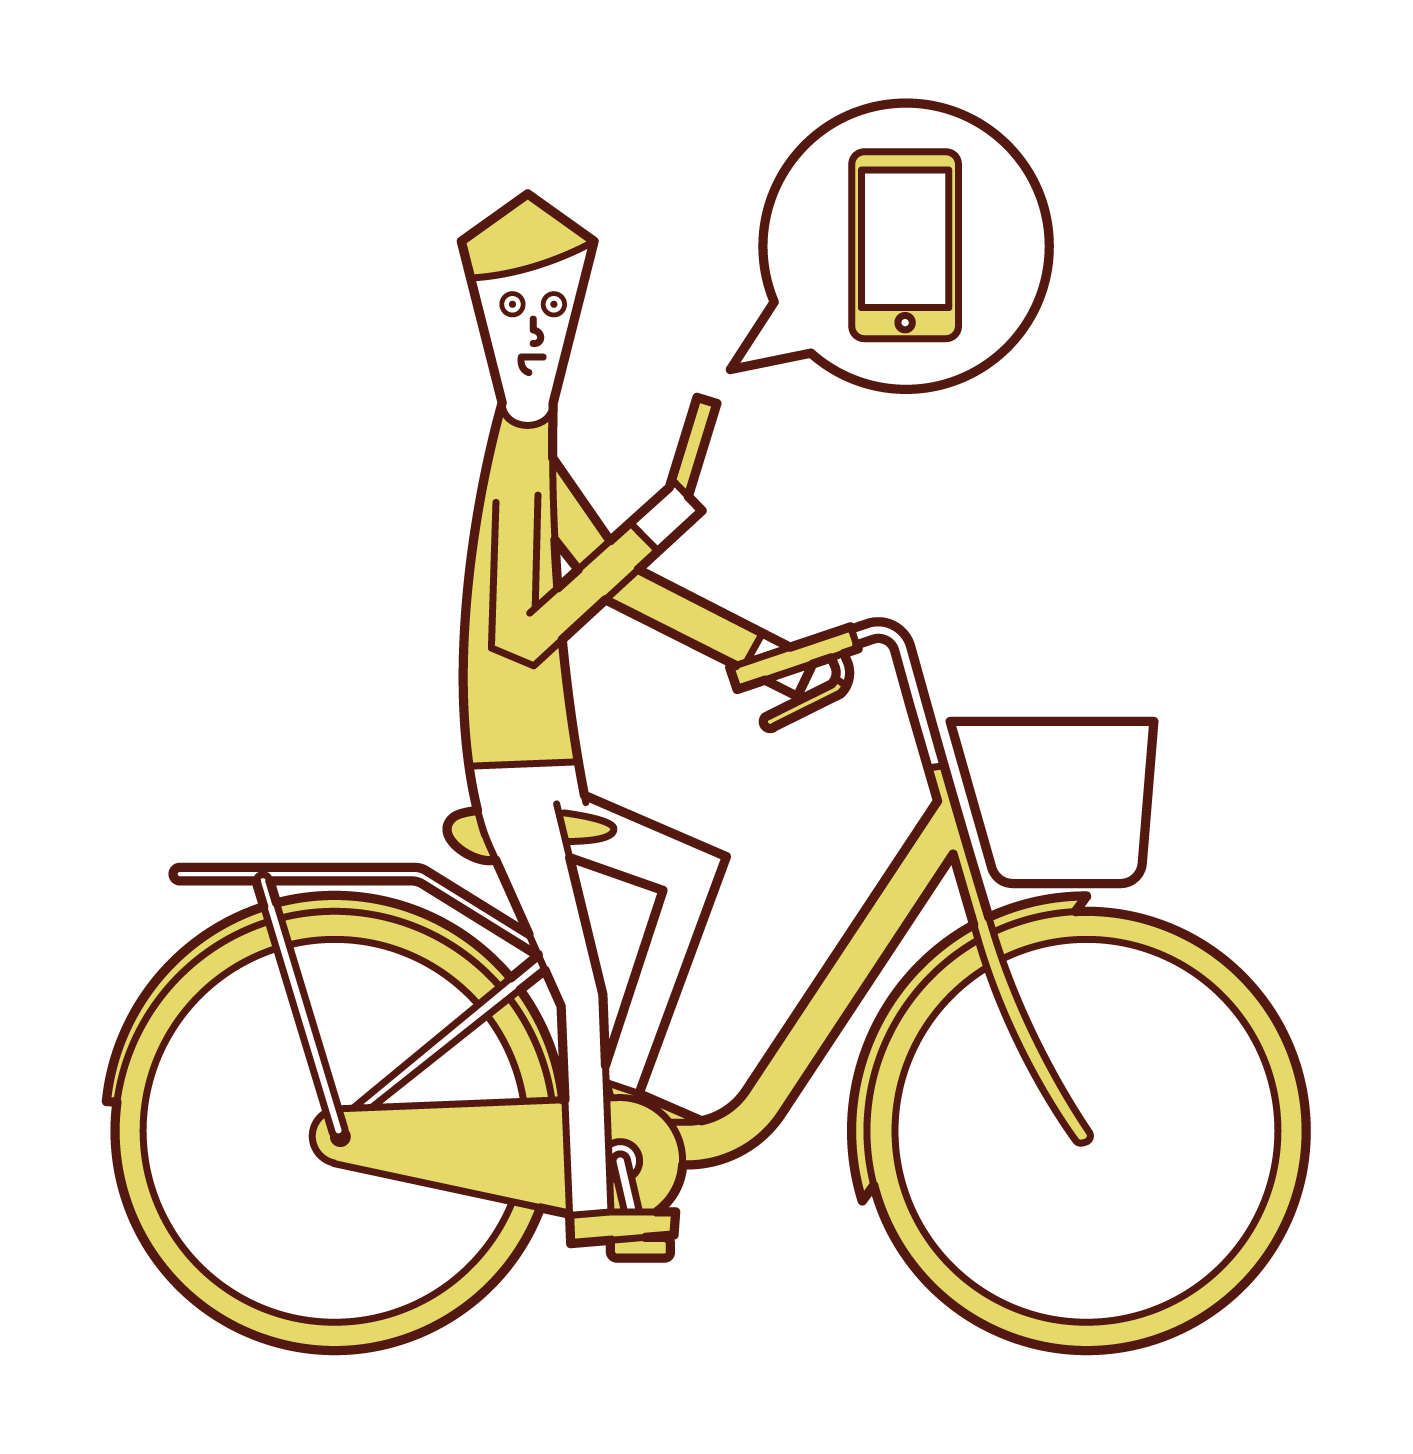 스마트폰을 사용하여 자전거를 운전하는 사람(남성)의 일러스트